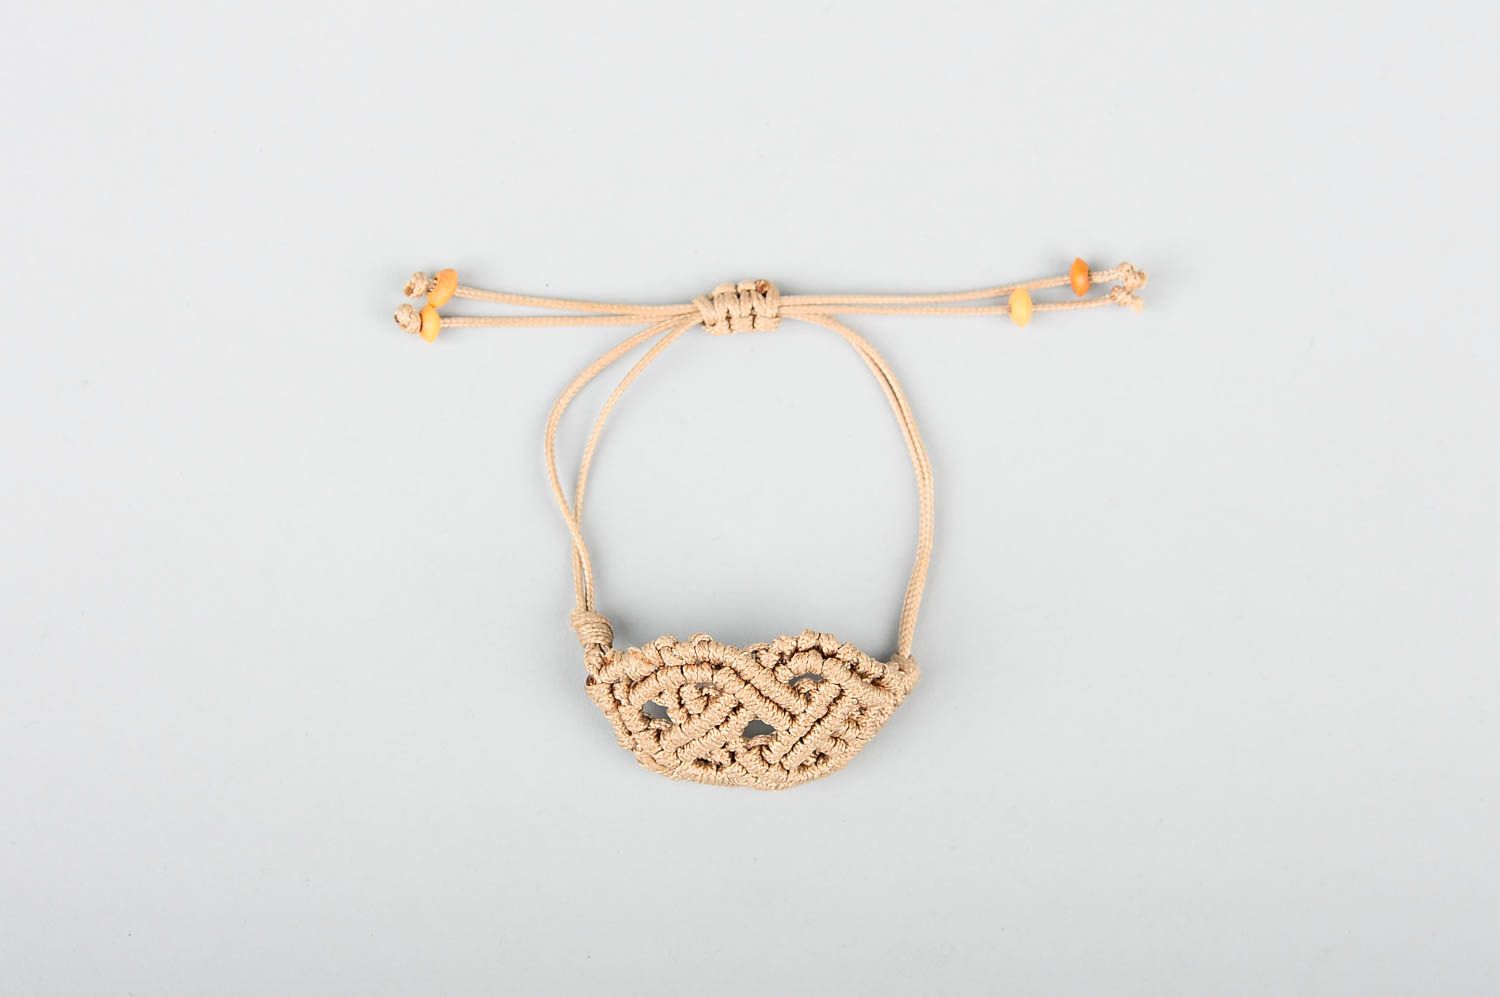 Woven handmade textile bracelet thread bracelet handmade accessories for girls photo 1